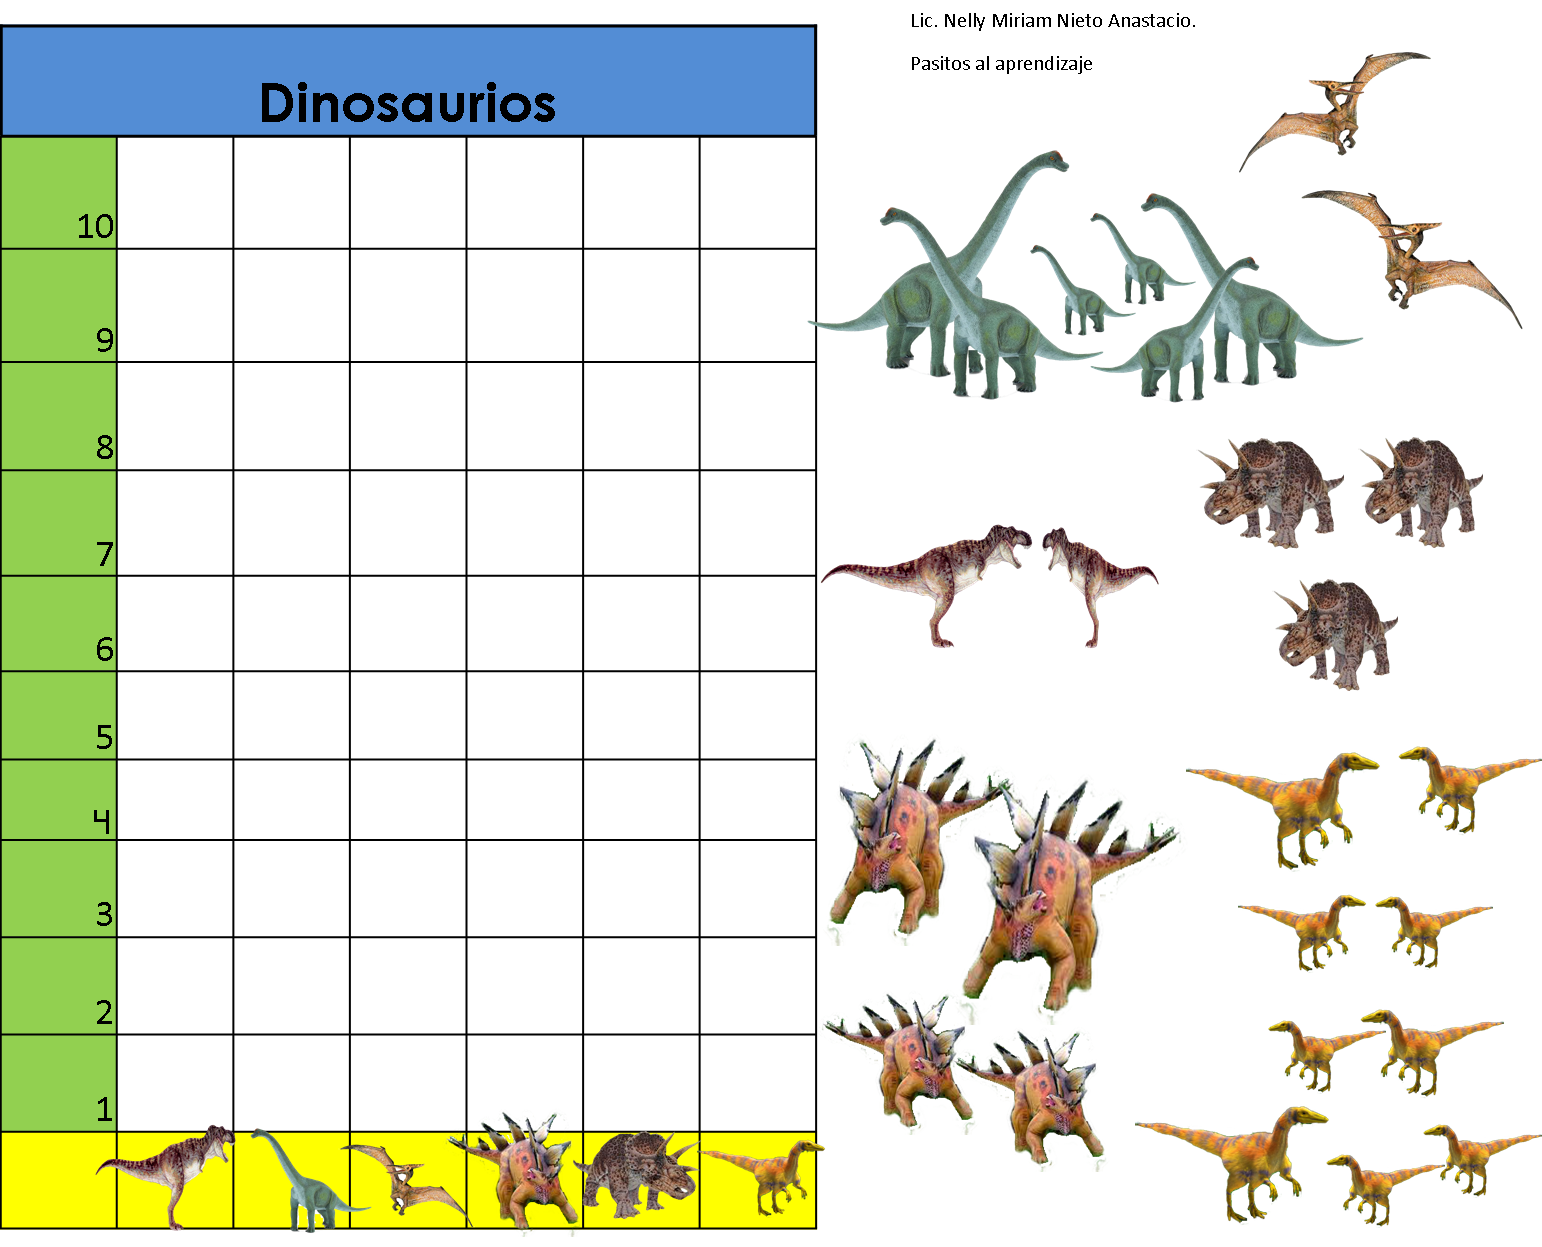 Pasitos al aprendizaje: Gráfica de dinosaurios para contar